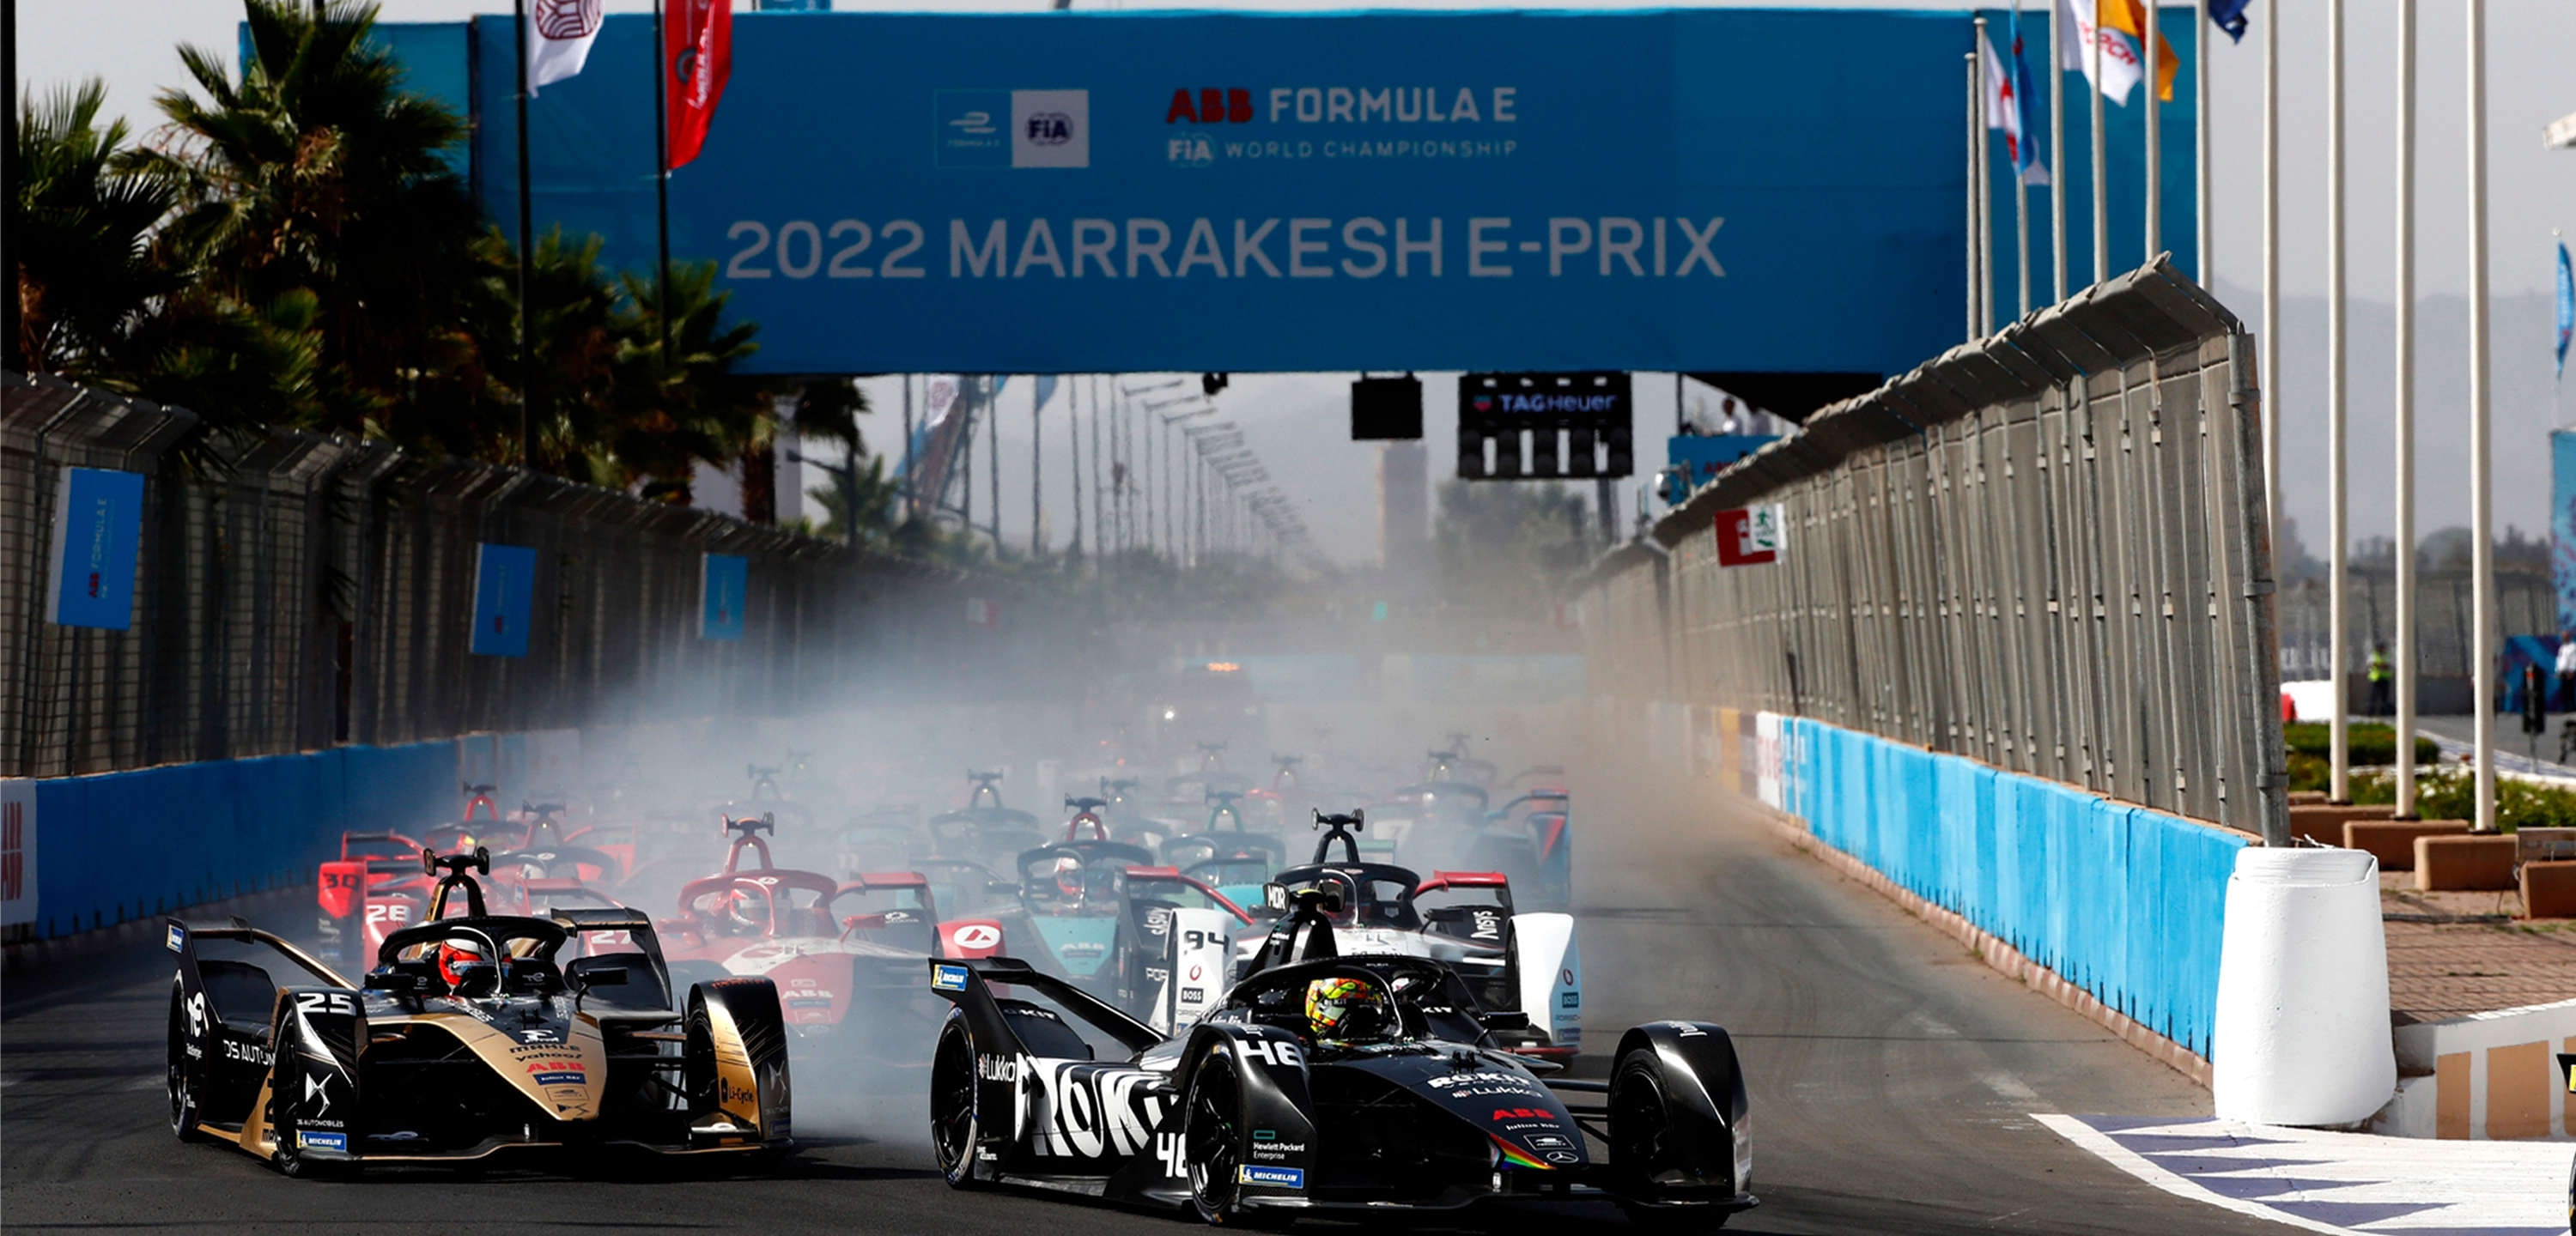 Formula E 2022 Marrakesh E-Prix, race